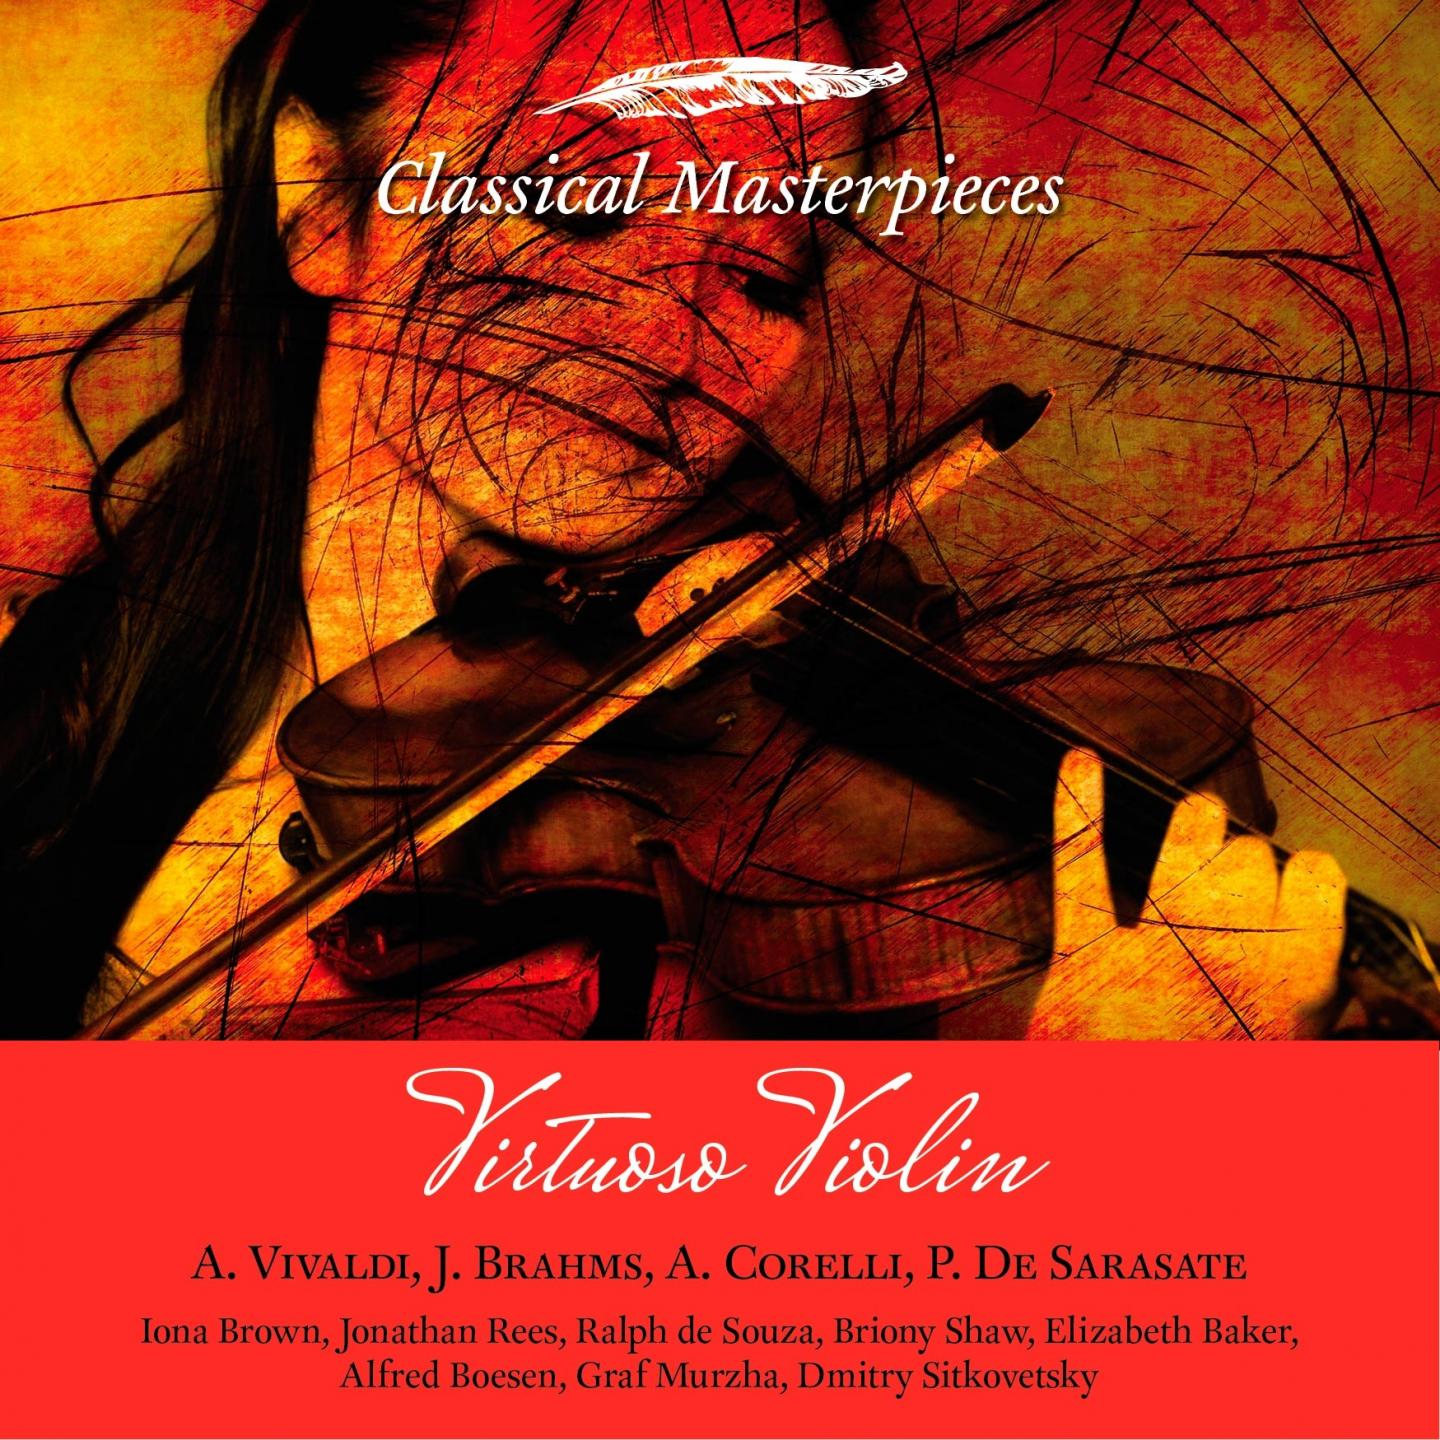 Concerto for Violin and Orchestra, Op. 77 in D Major: I Allegro non troppo